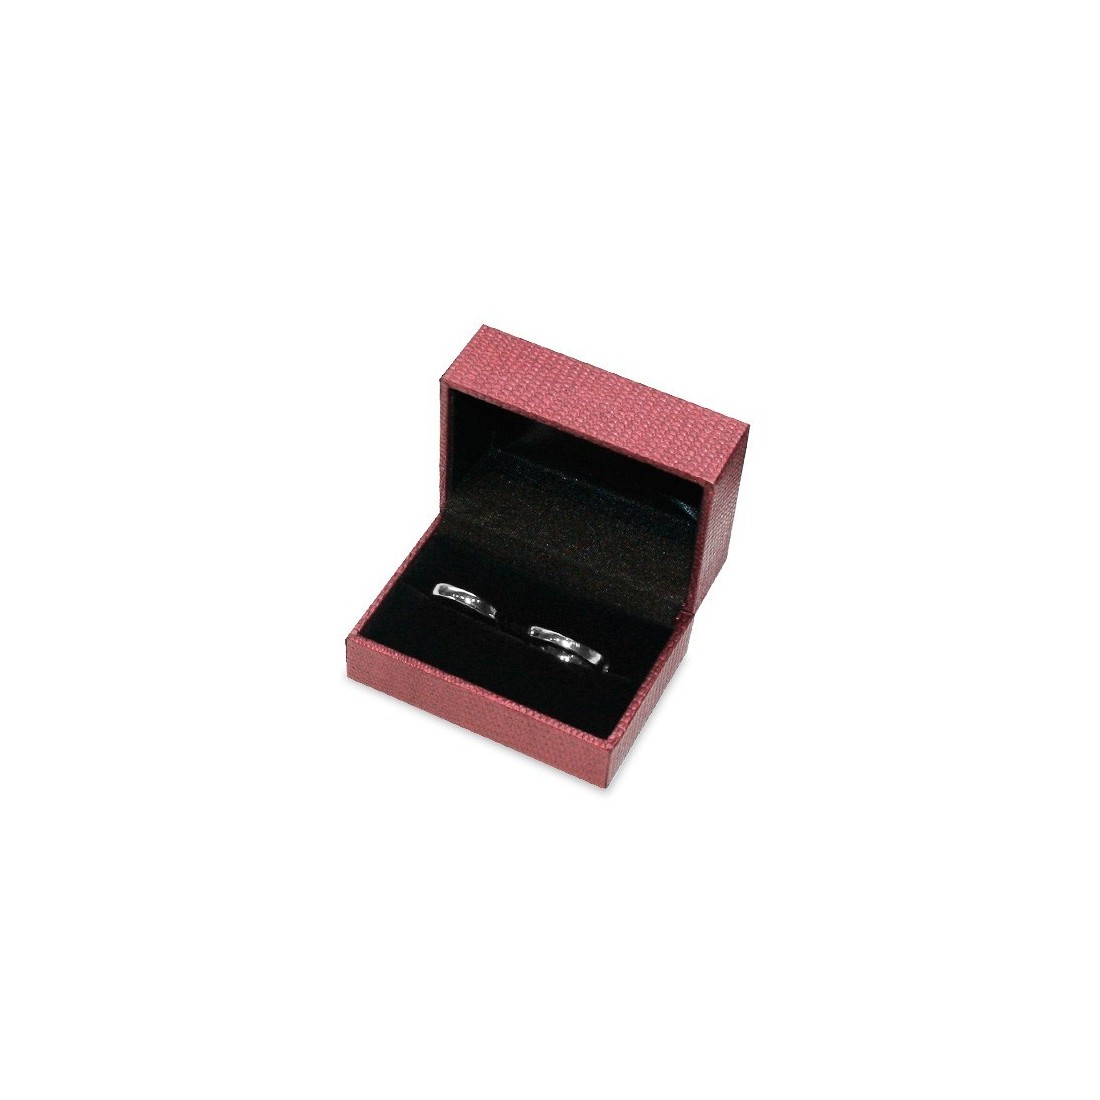 Wedding ring box - Boston